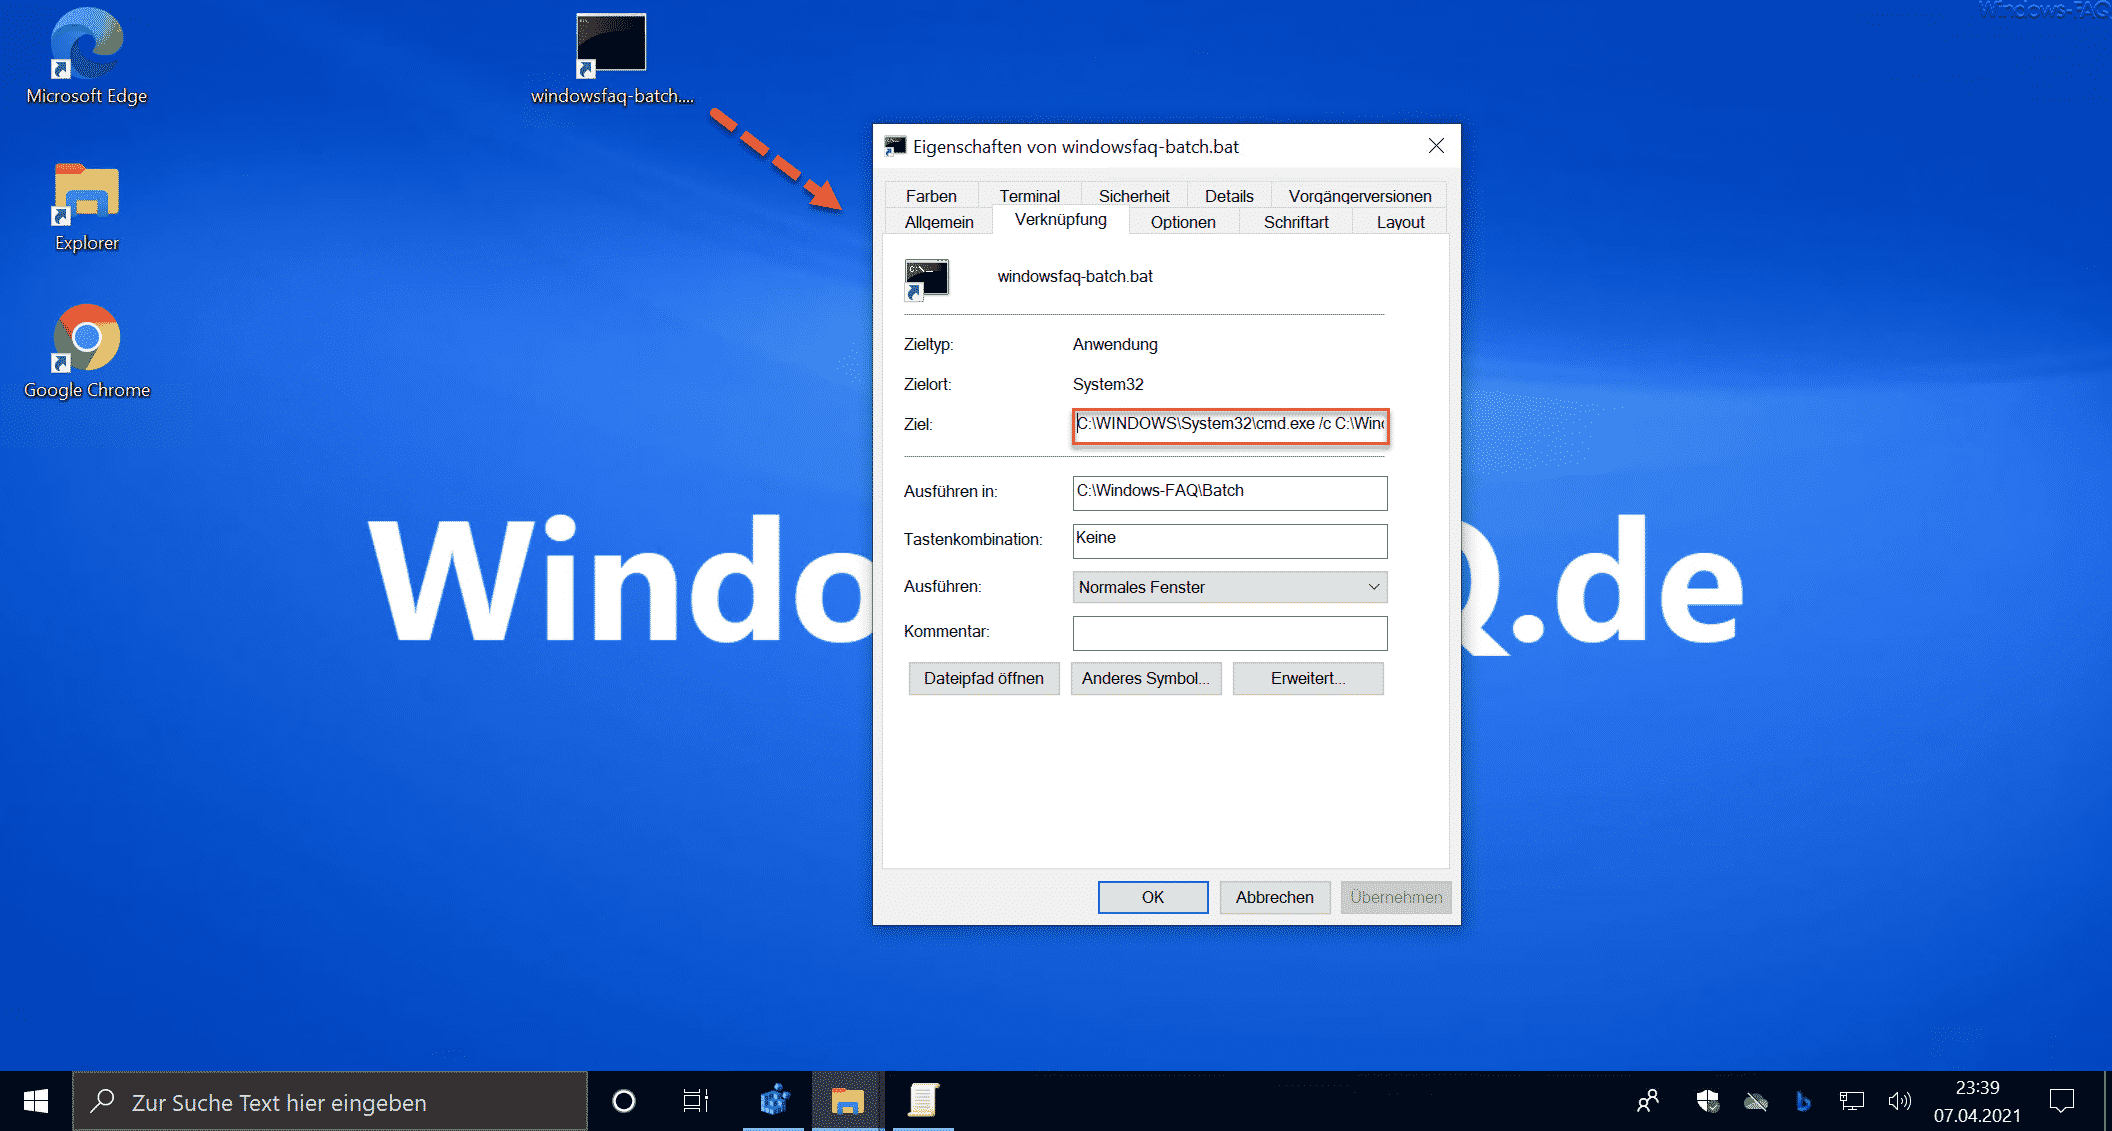 0x80070070 0x2000c - Windows 10 konnte nicht installiert werden (SAFE_OS -  APPLY_IMAGE) - Windows FAQ